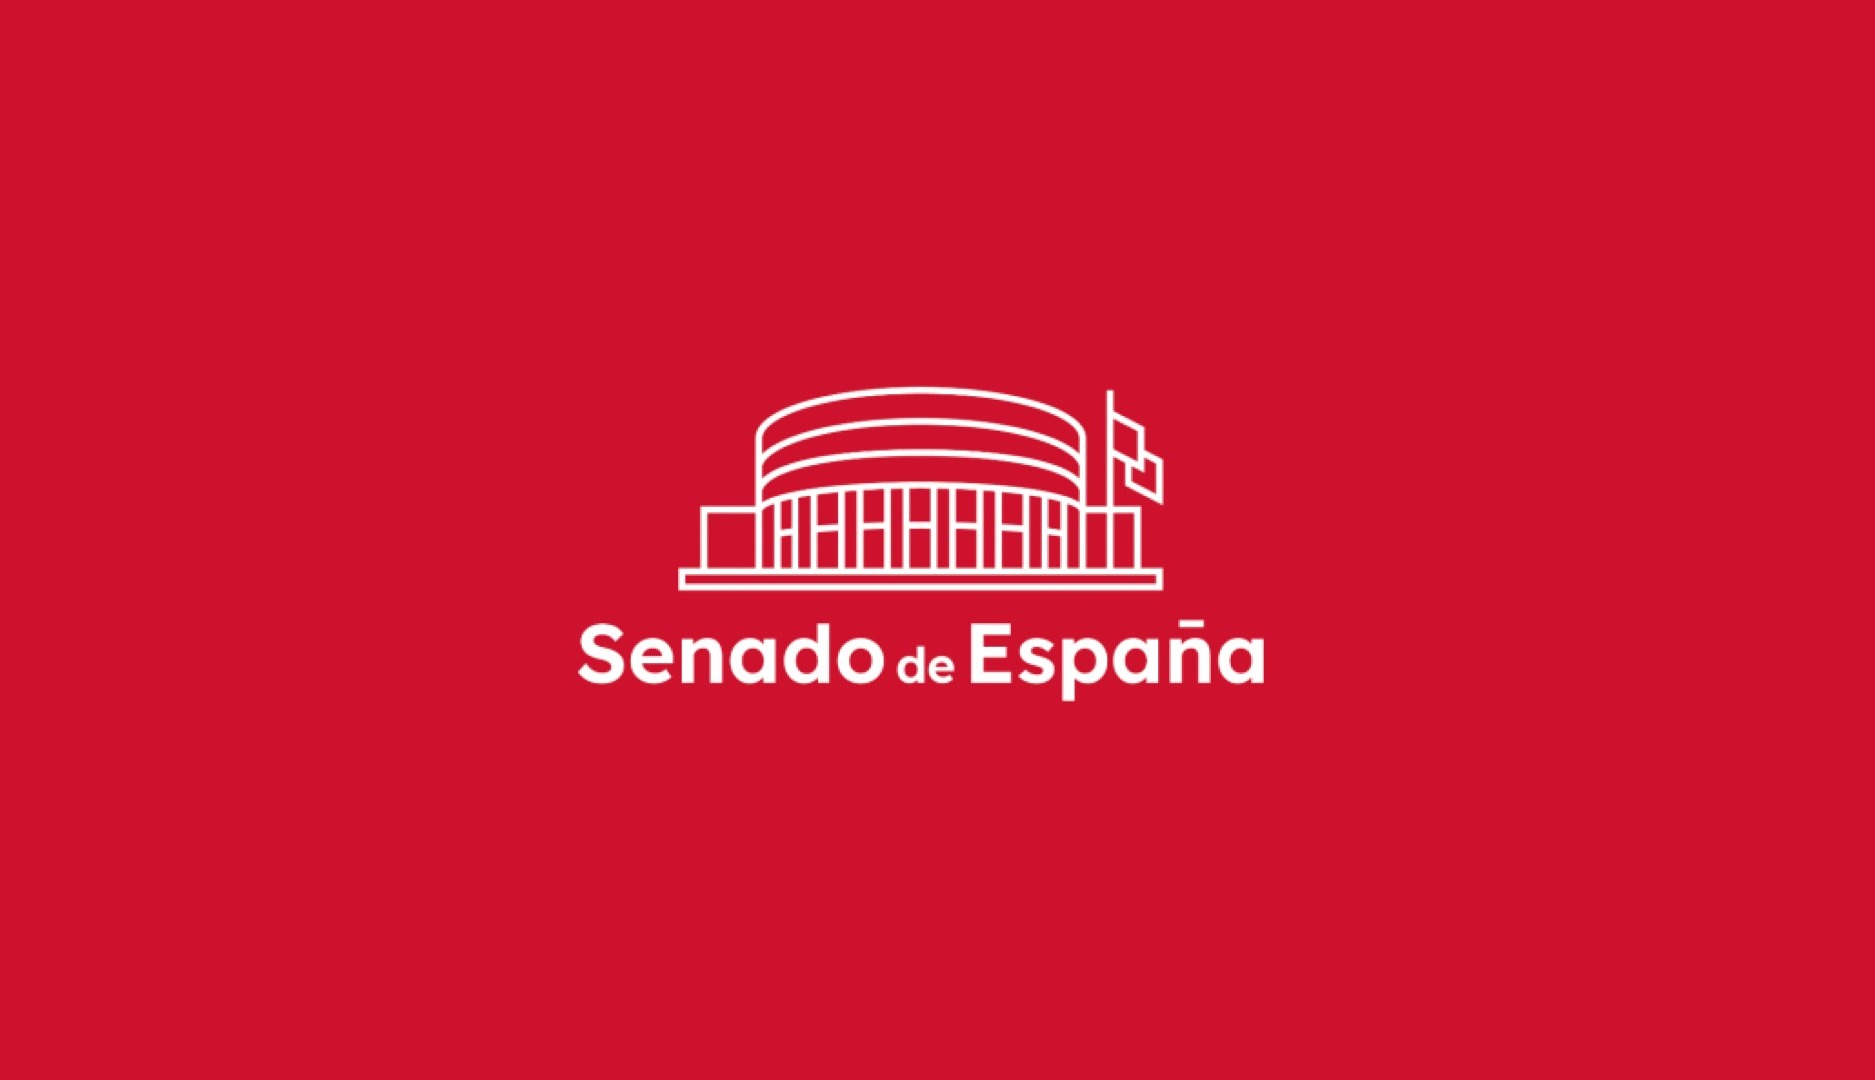 Logotipo renovado del Senado